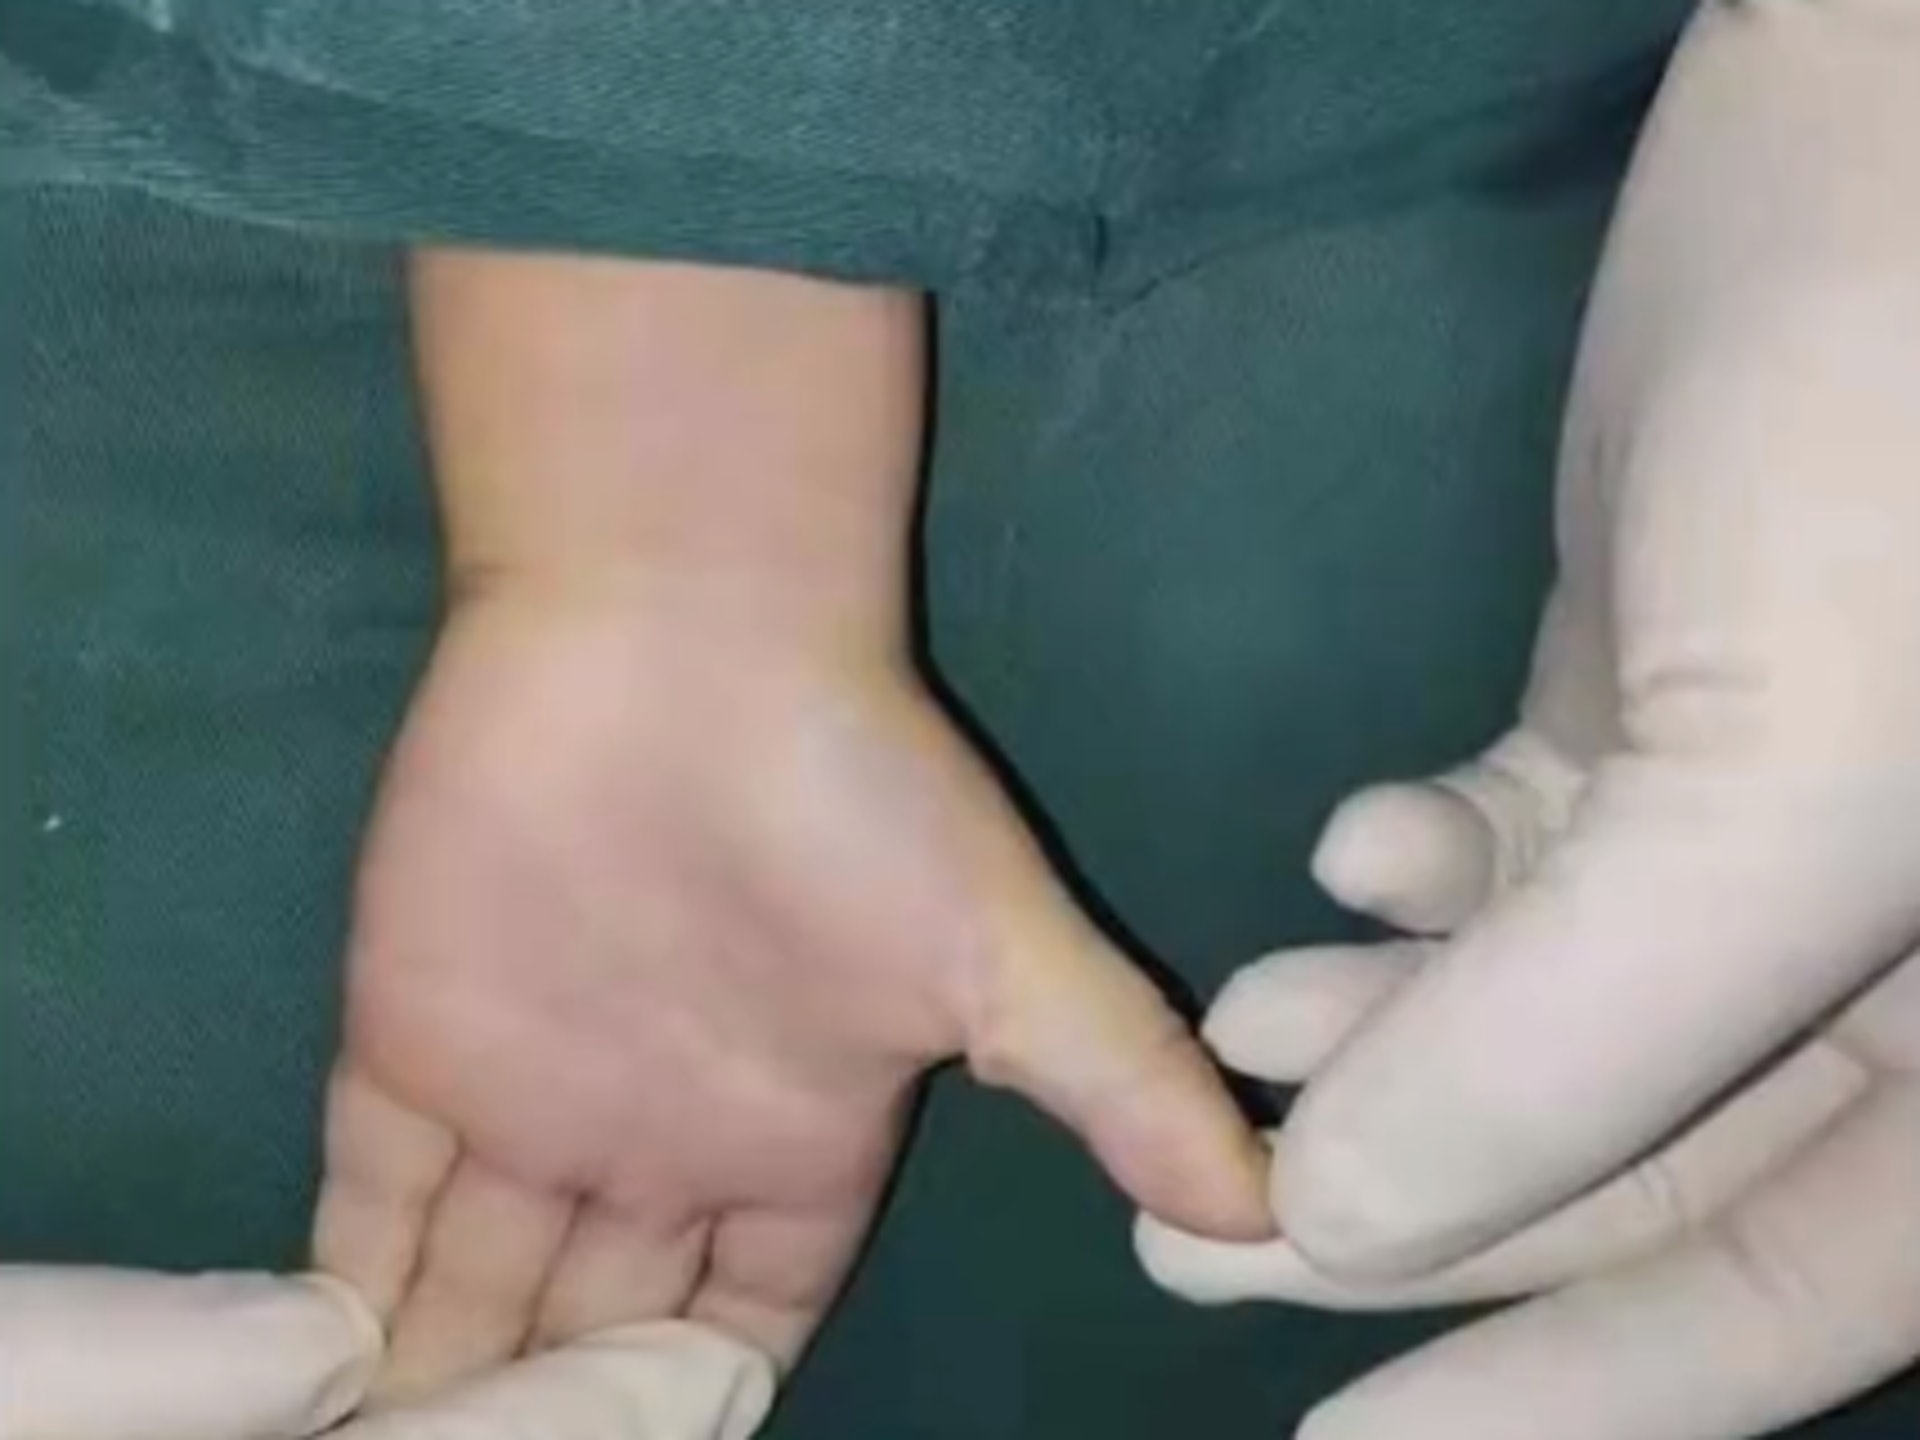 醫生檢查後，認為雯雯雙手的姆指均確診狹窄性腱鞘炎，俗稱玩手機電腦造成的「扳機指」，須接受手術改善手指的活動能力。（沸點影片截圖）